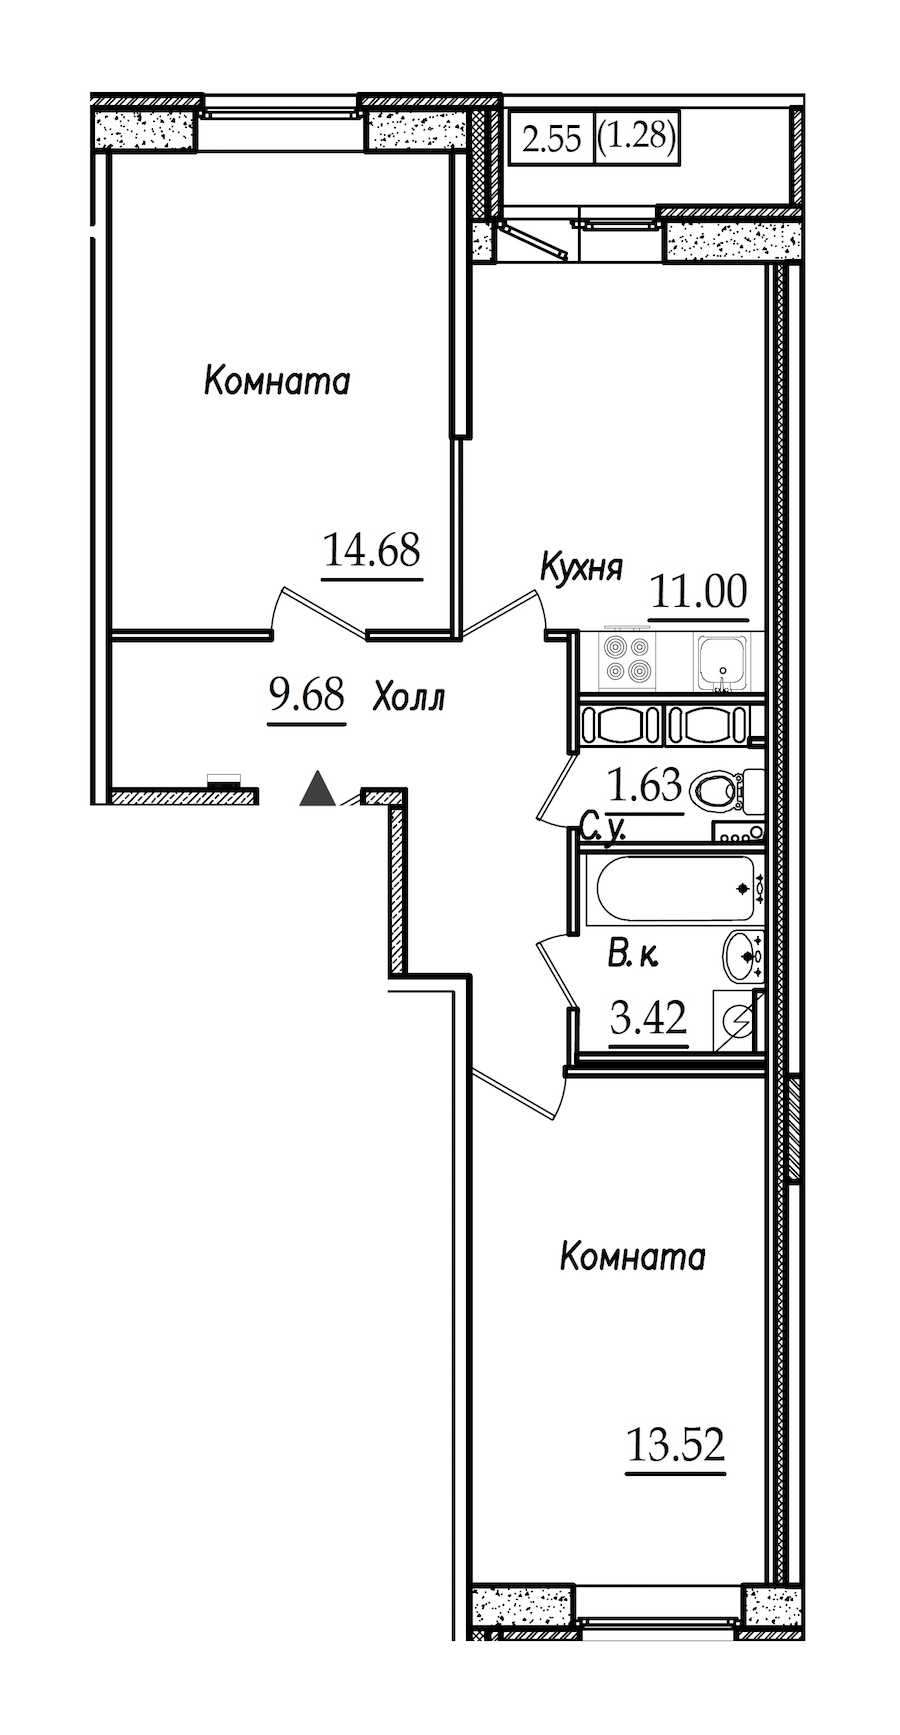 Двухкомнатная квартира в СПб Реновация: площадь 55.21 м2 , этаж: 7 – купить в Санкт-Петербурге